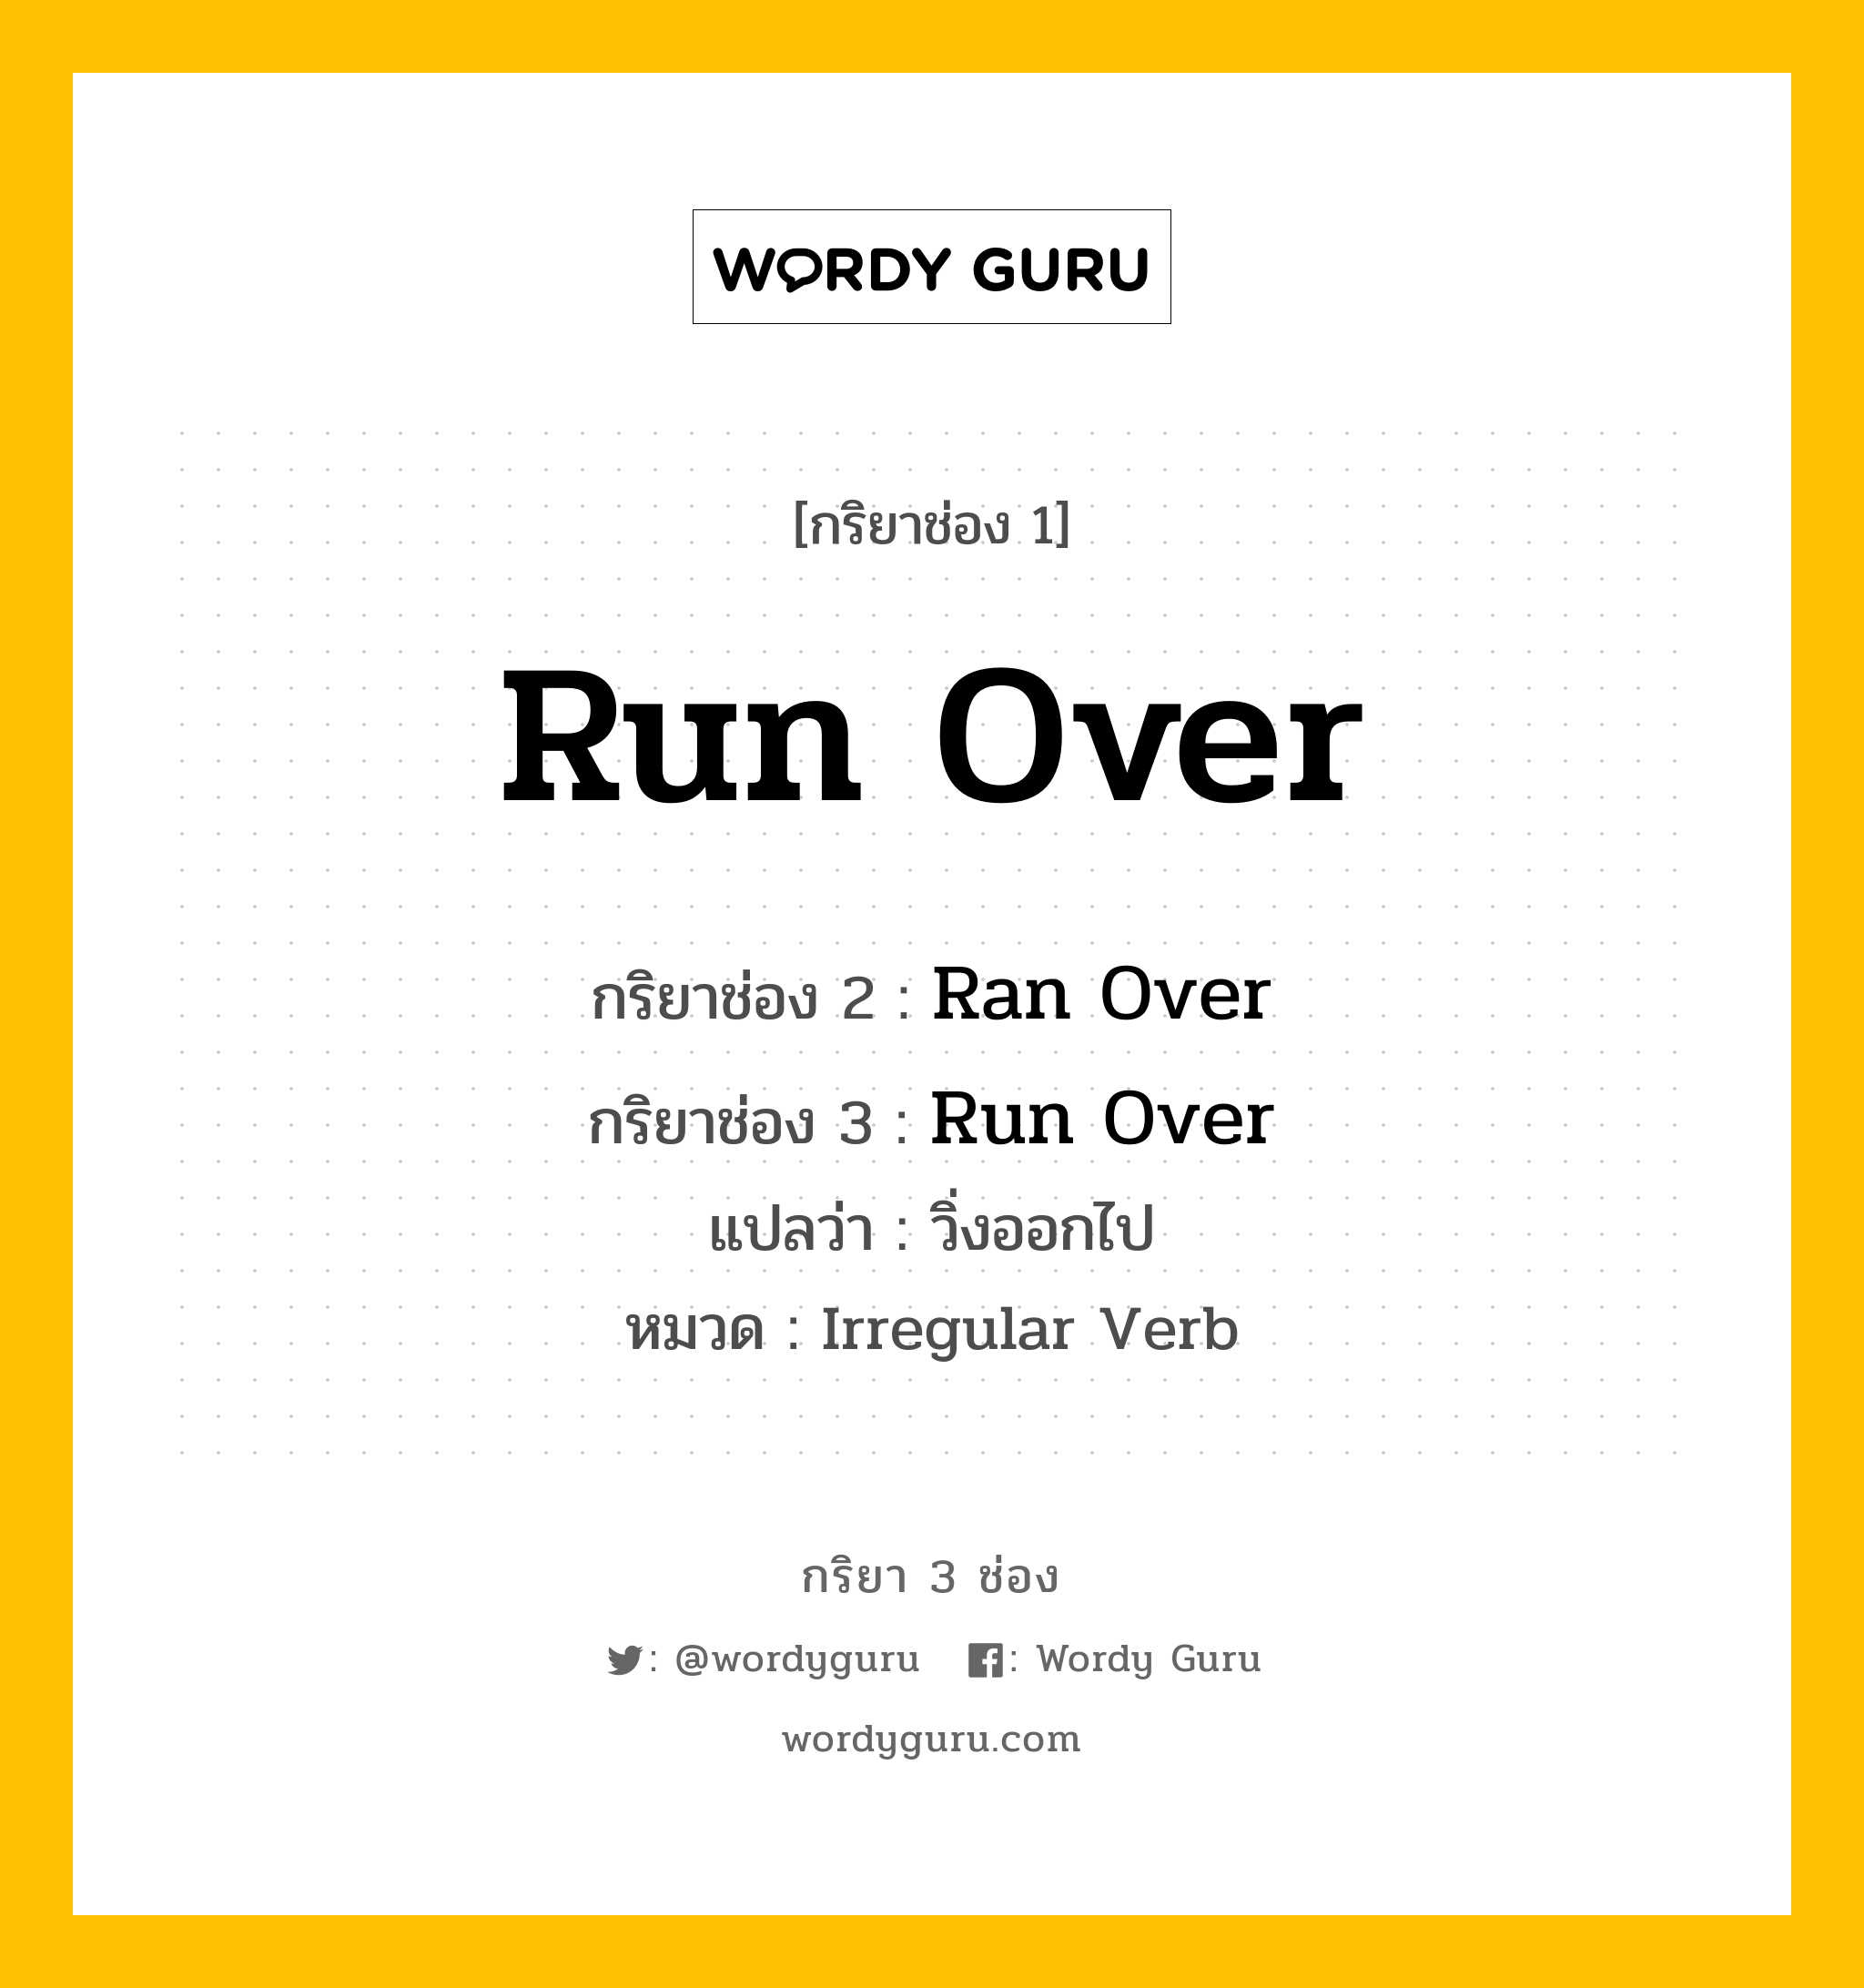 กริยา 3 ช่อง: Run Over ช่อง 2 Run Over ช่อง 3 คืออะไร, กริยาช่อง 1 Run Over กริยาช่อง 2 Ran Over กริยาช่อง 3 Run Over แปลว่า วิ่งออกไป หมวด Irregular Verb หมวด Irregular Verb